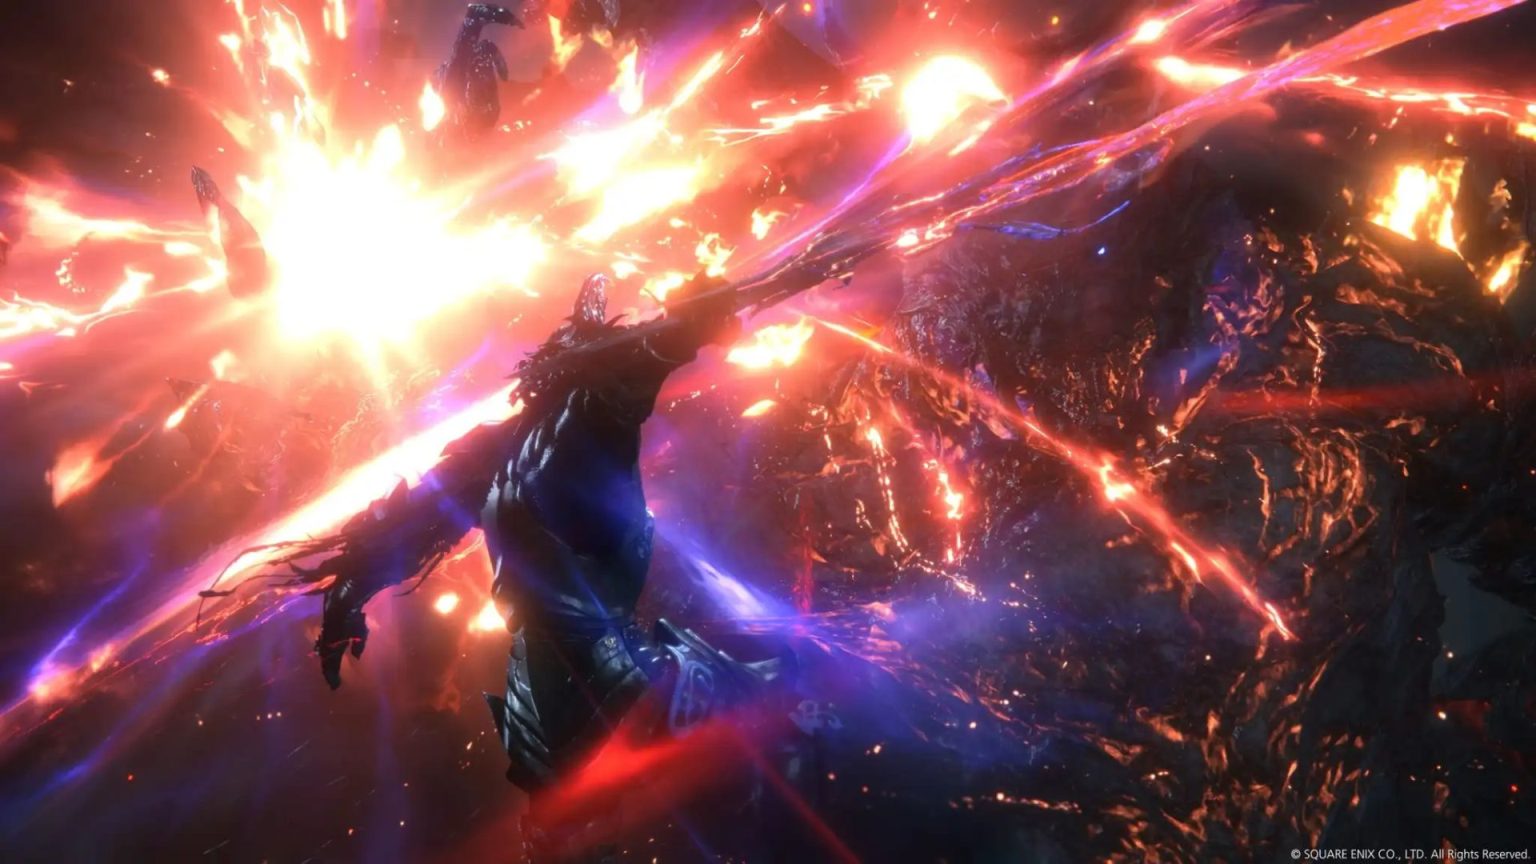 《最终幻想16》将有二周目模式和硬核难度 敌人血量、攻击力等上调